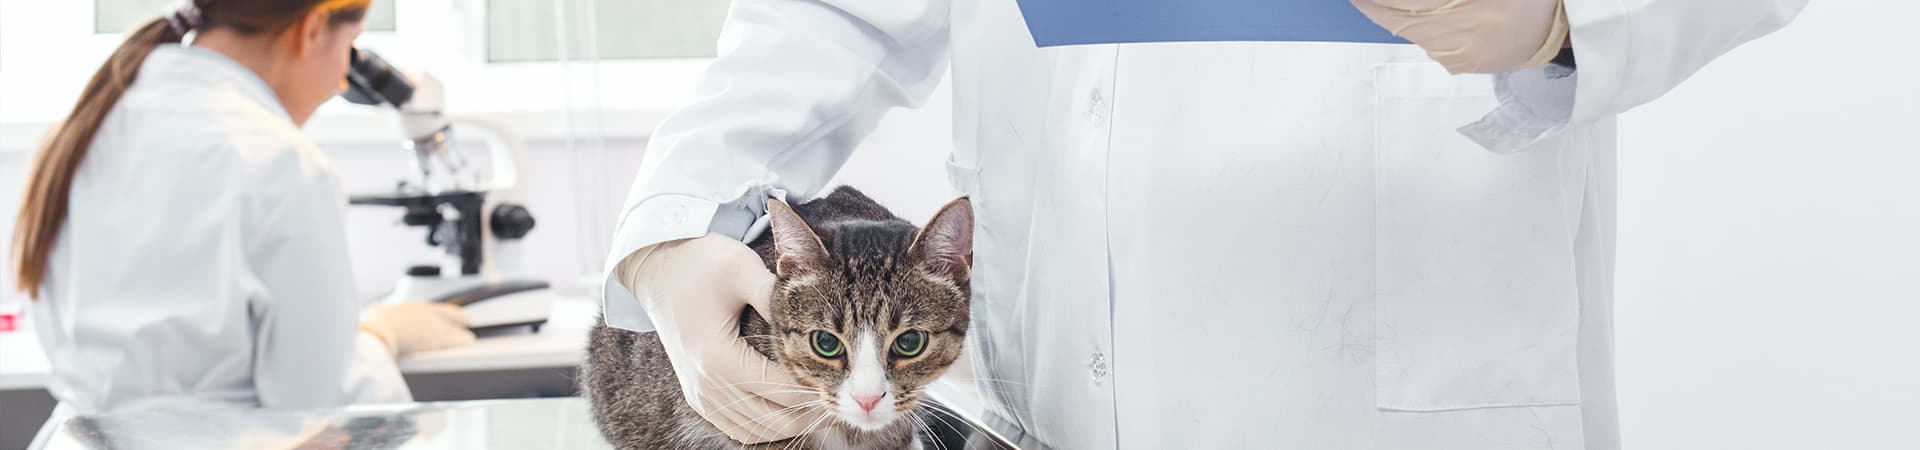 Eine Katze sitzt auf dem Behandlungstisch und wird von einem Tierarzt festgehalten. Eine weitere Tierärztin untersucht Proben unter dem Mikroskop